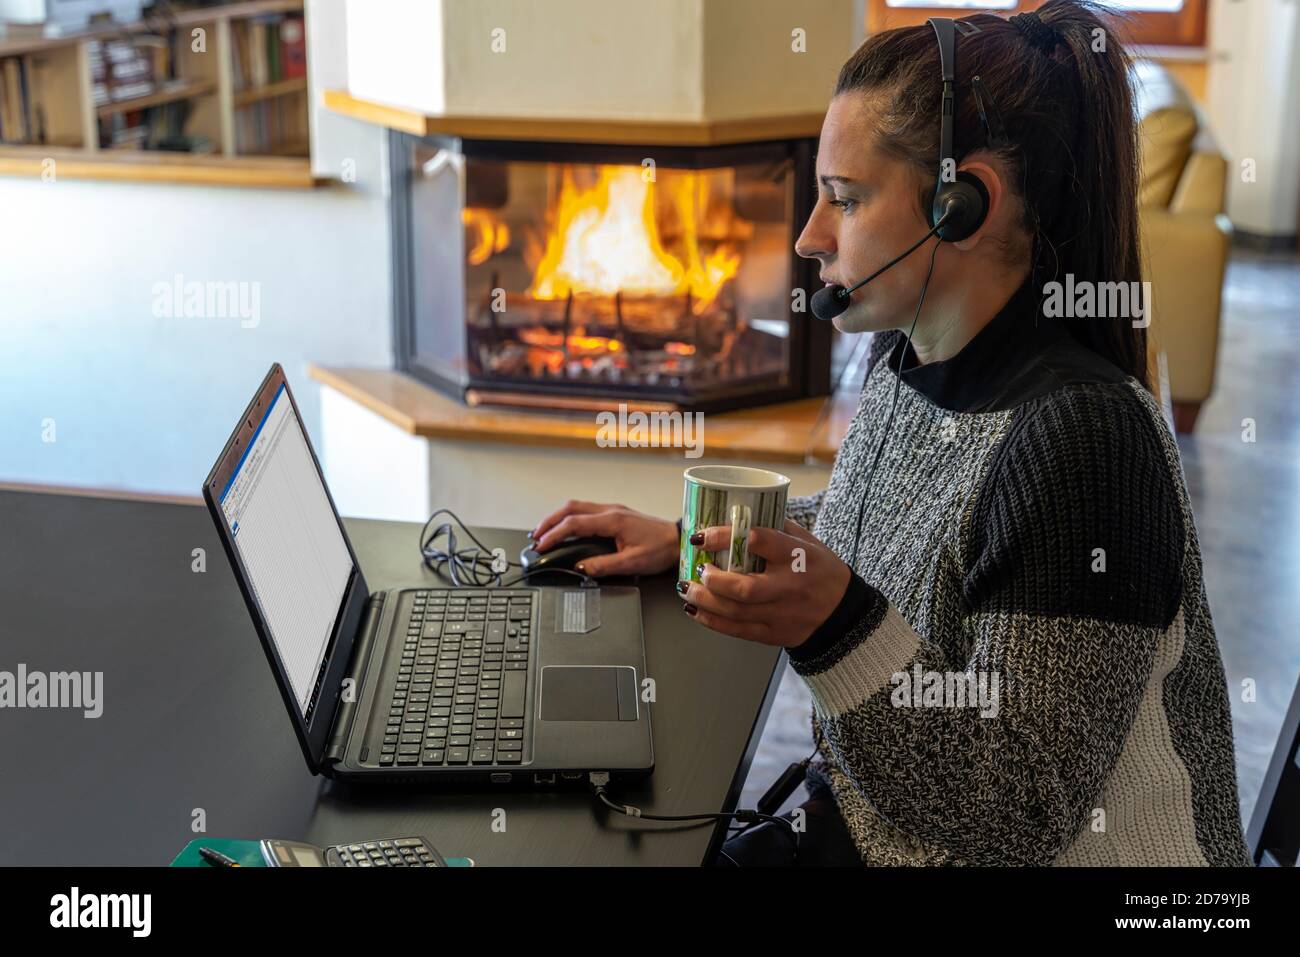 Travail intelligent. Jeune femme travaillant sur un ordinateur portable à la maison, pendant la crise sanitaire Covid-19 Banque D'Images